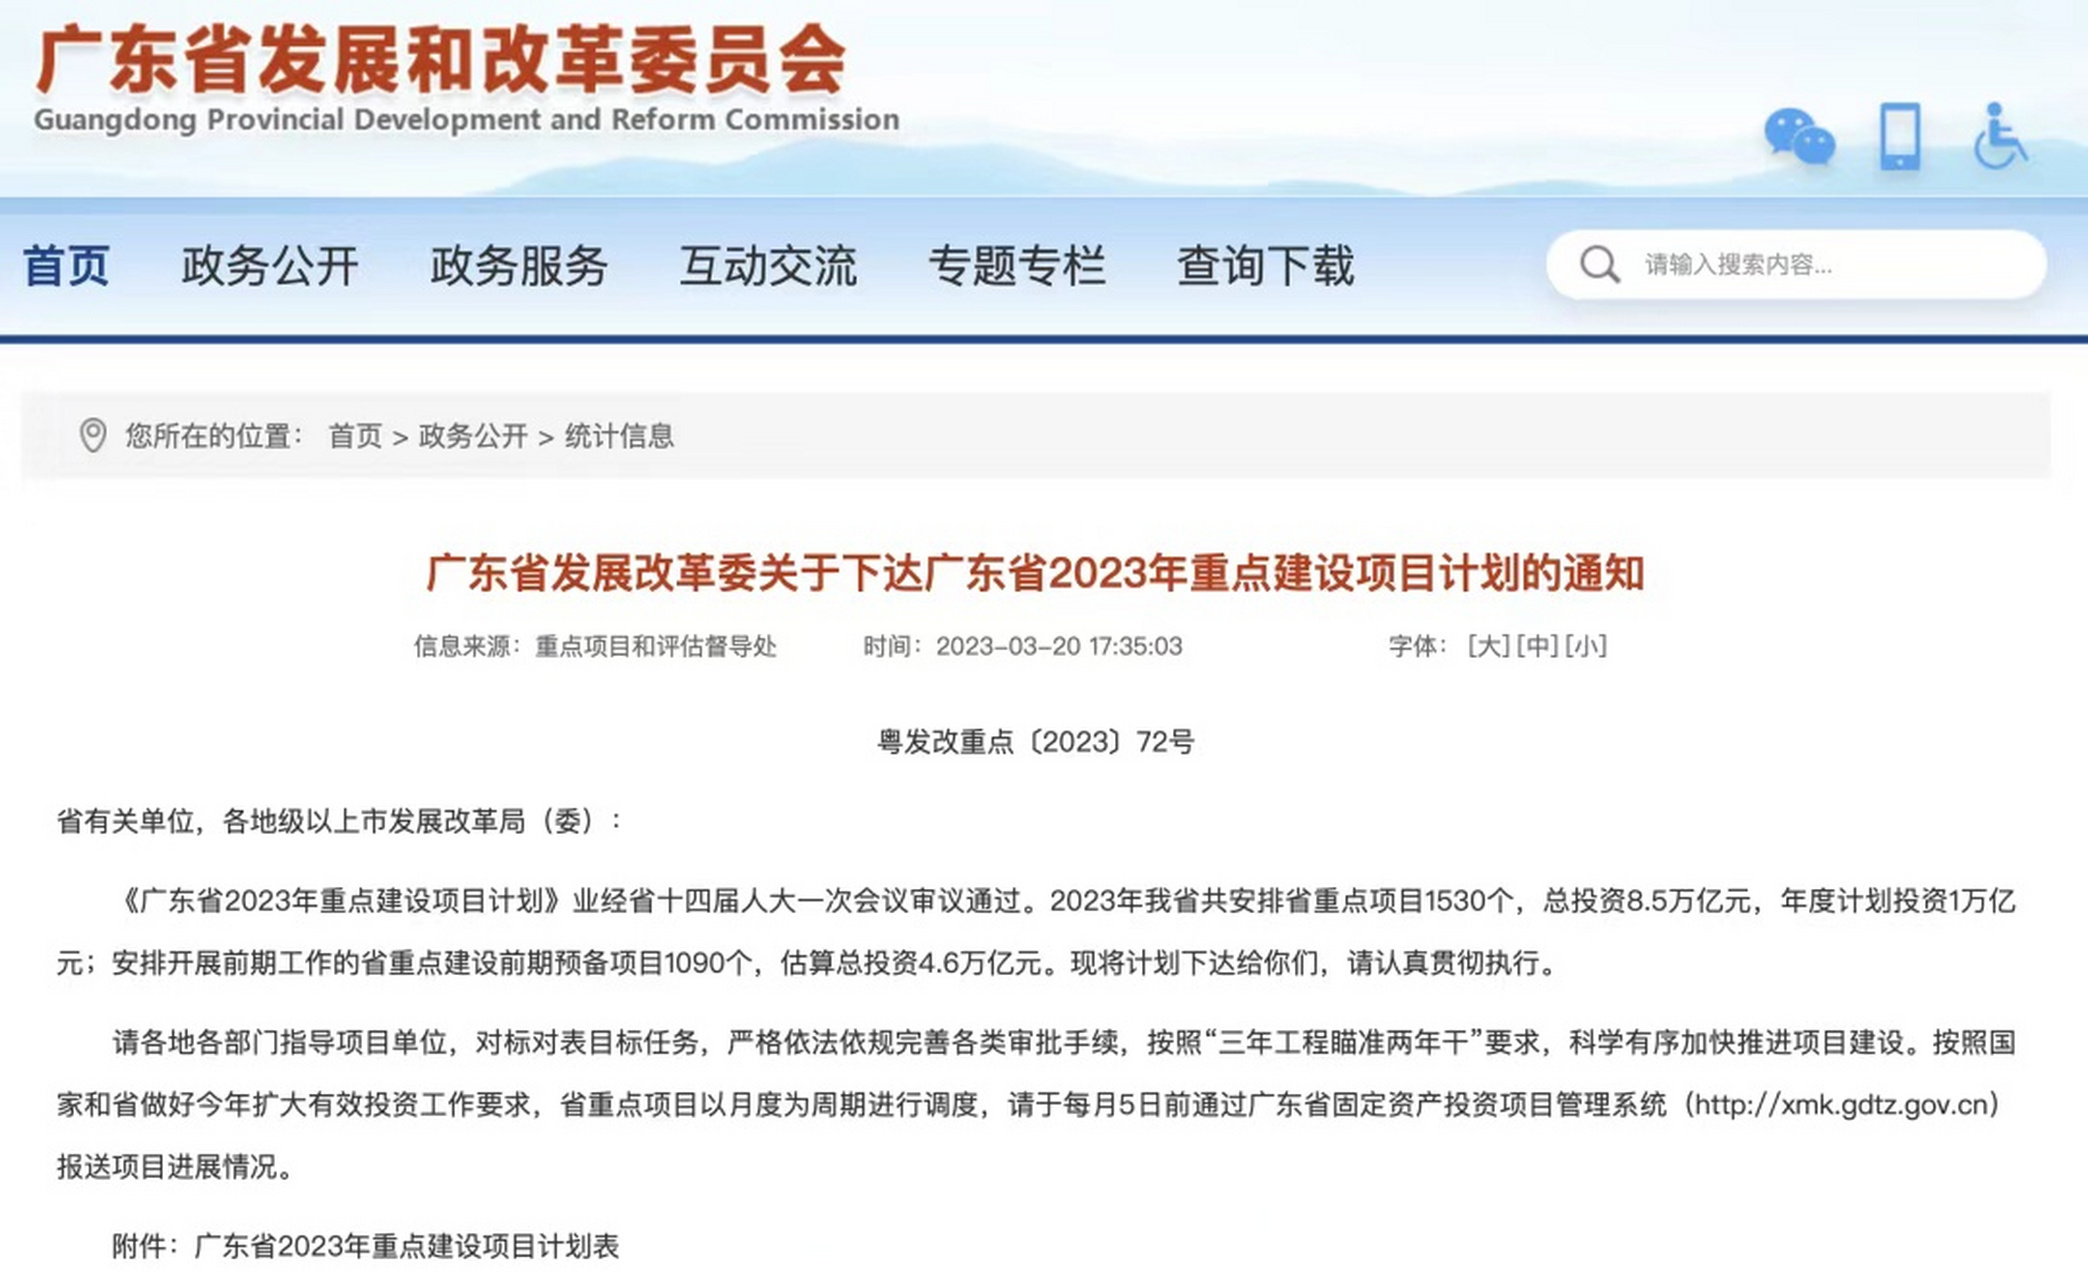 广东省发改委网站公布了2023年重点建设项目计划,其中包括深圳至南宁